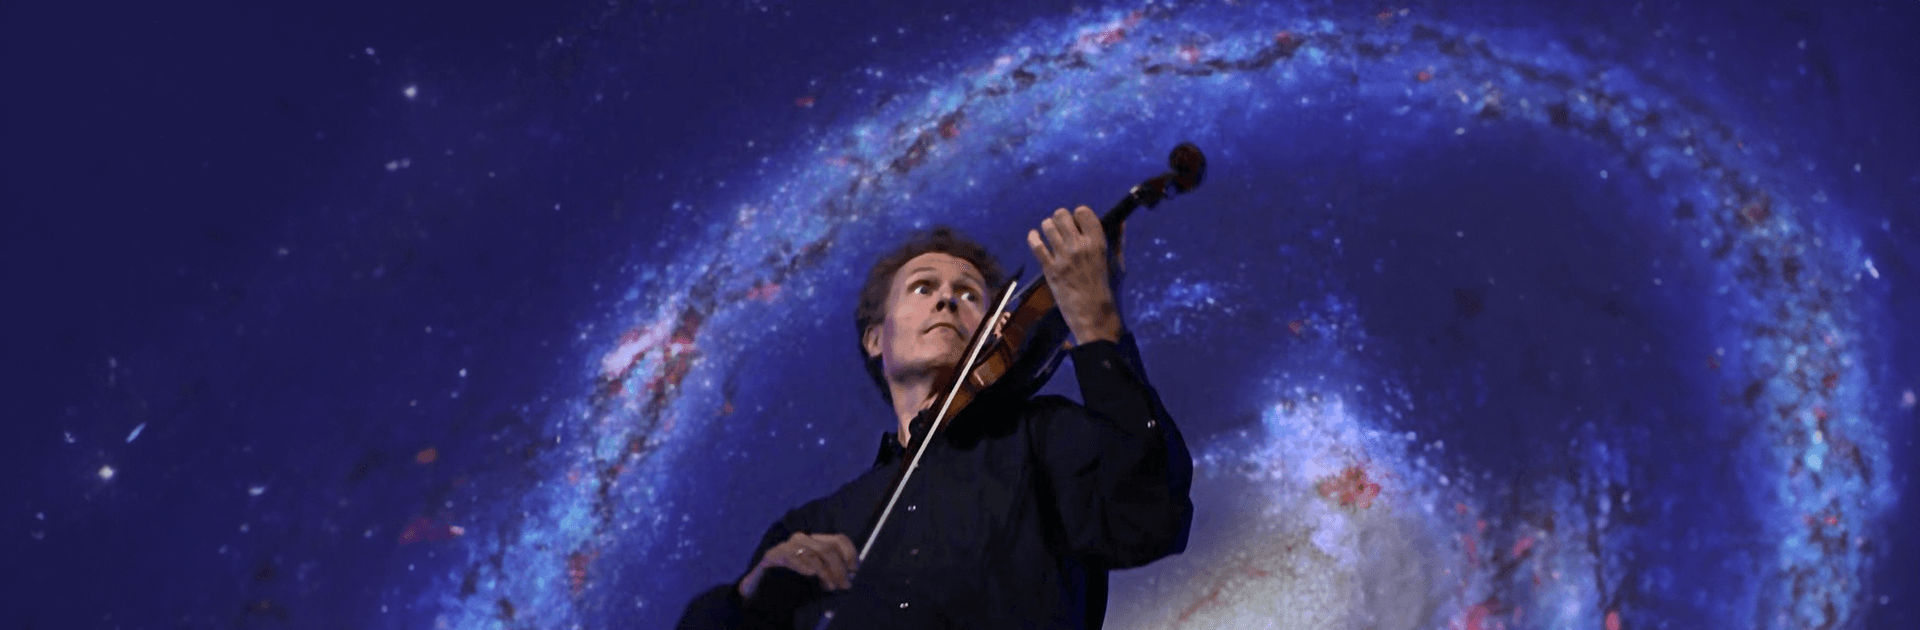 Freiburger Barockorchester: "Vivaldi unter Sternen"